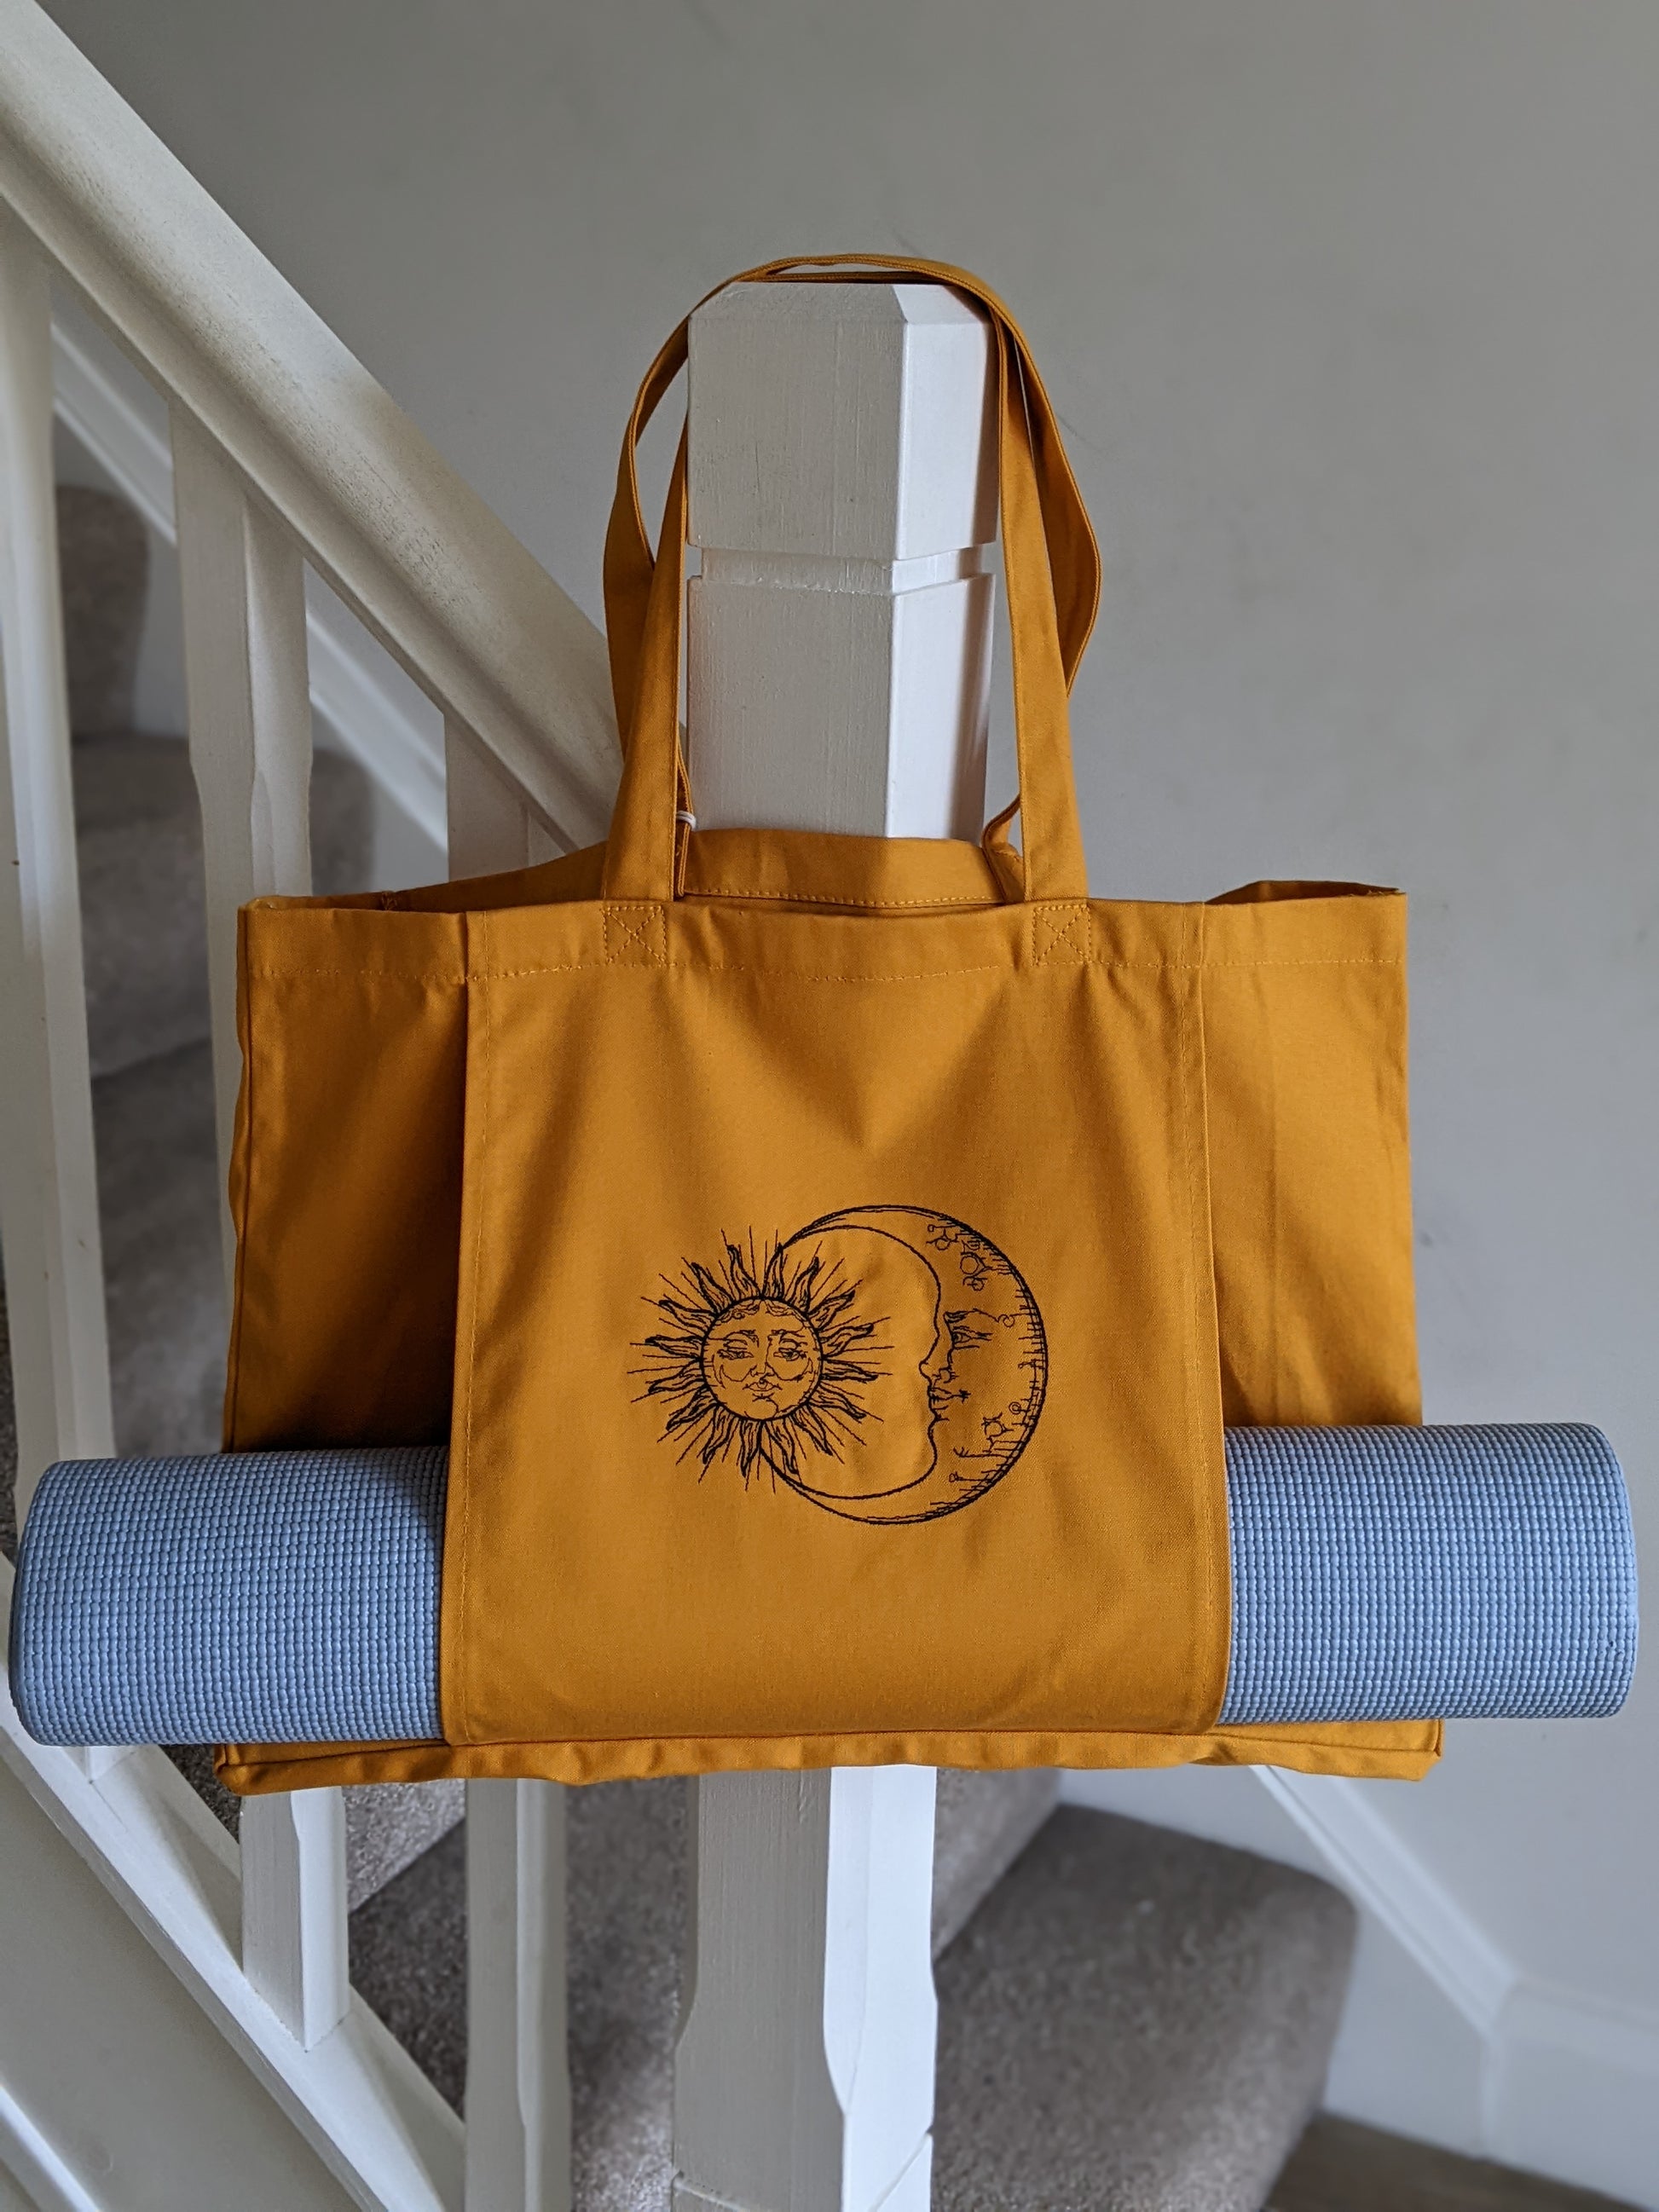 Yoga Tote Bag with Yoga Mat Pocket, Yoga Pilates Mat Bag, Organic Cotton Tote  Bag, Large Gym Bag, Beach Tote Bag with Sleeve, Embroidered